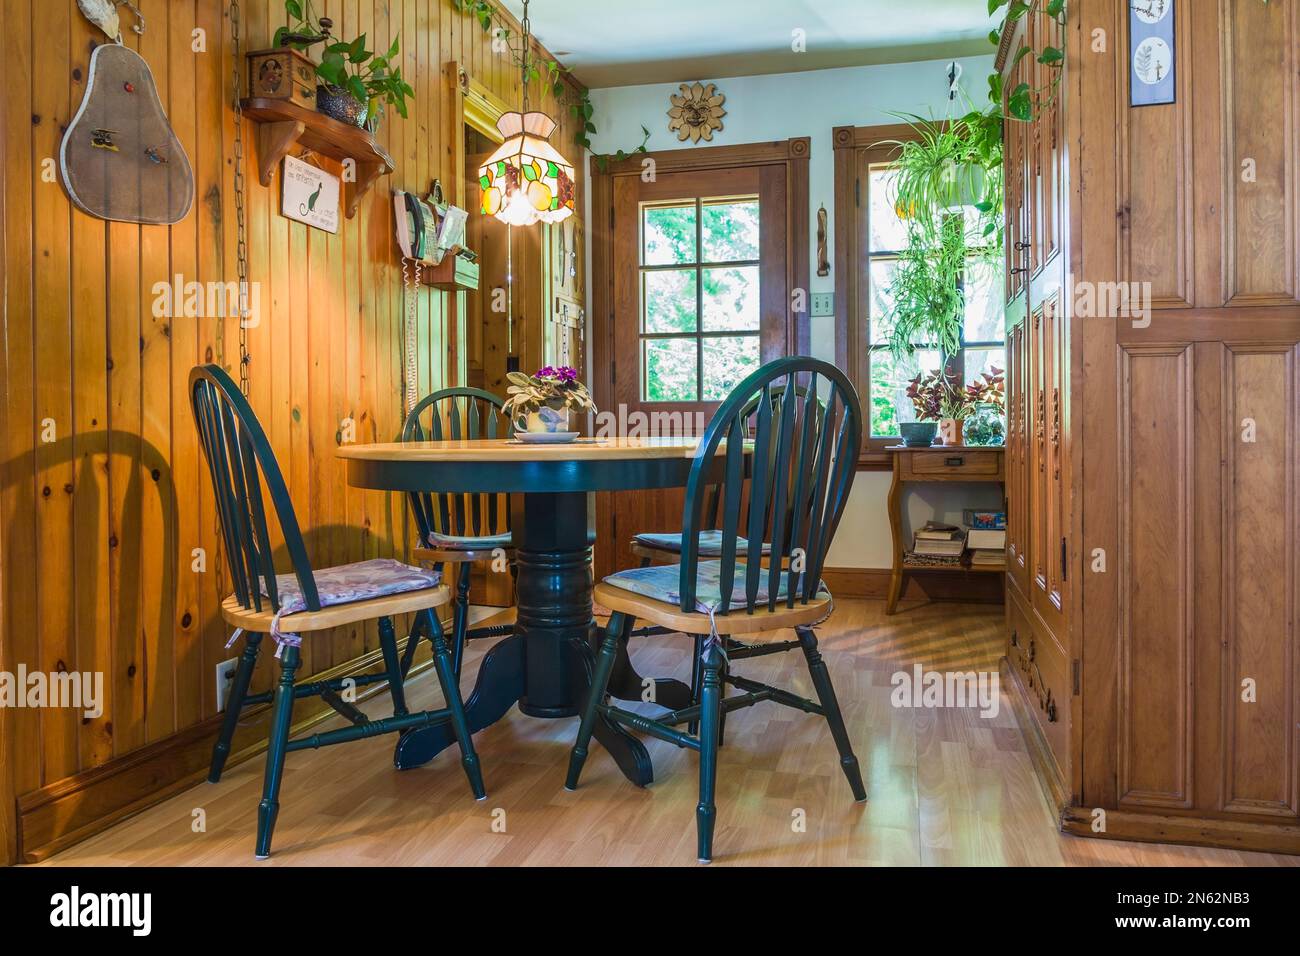 Cocina de campo con mesa de comedor de madera de cerezo y sillas de  respaldo alto, gabinetes de madera de pino, piso laminado de madera dentro  de la antigua casa de estilo